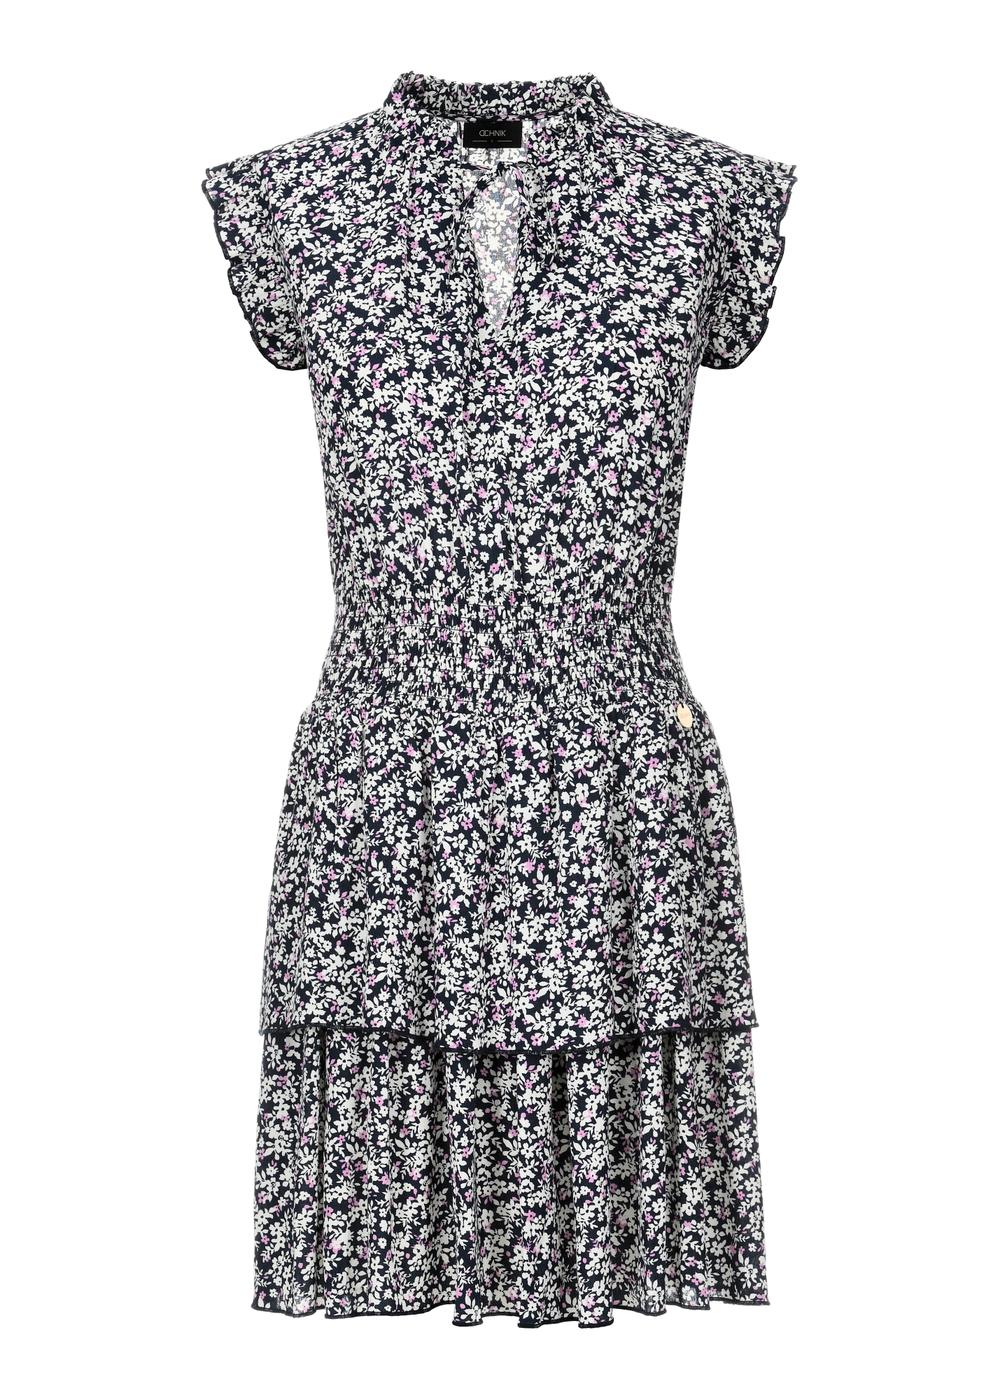 Krótka sukienka letnia w kwiaty SUKDT-0194-69(W24)